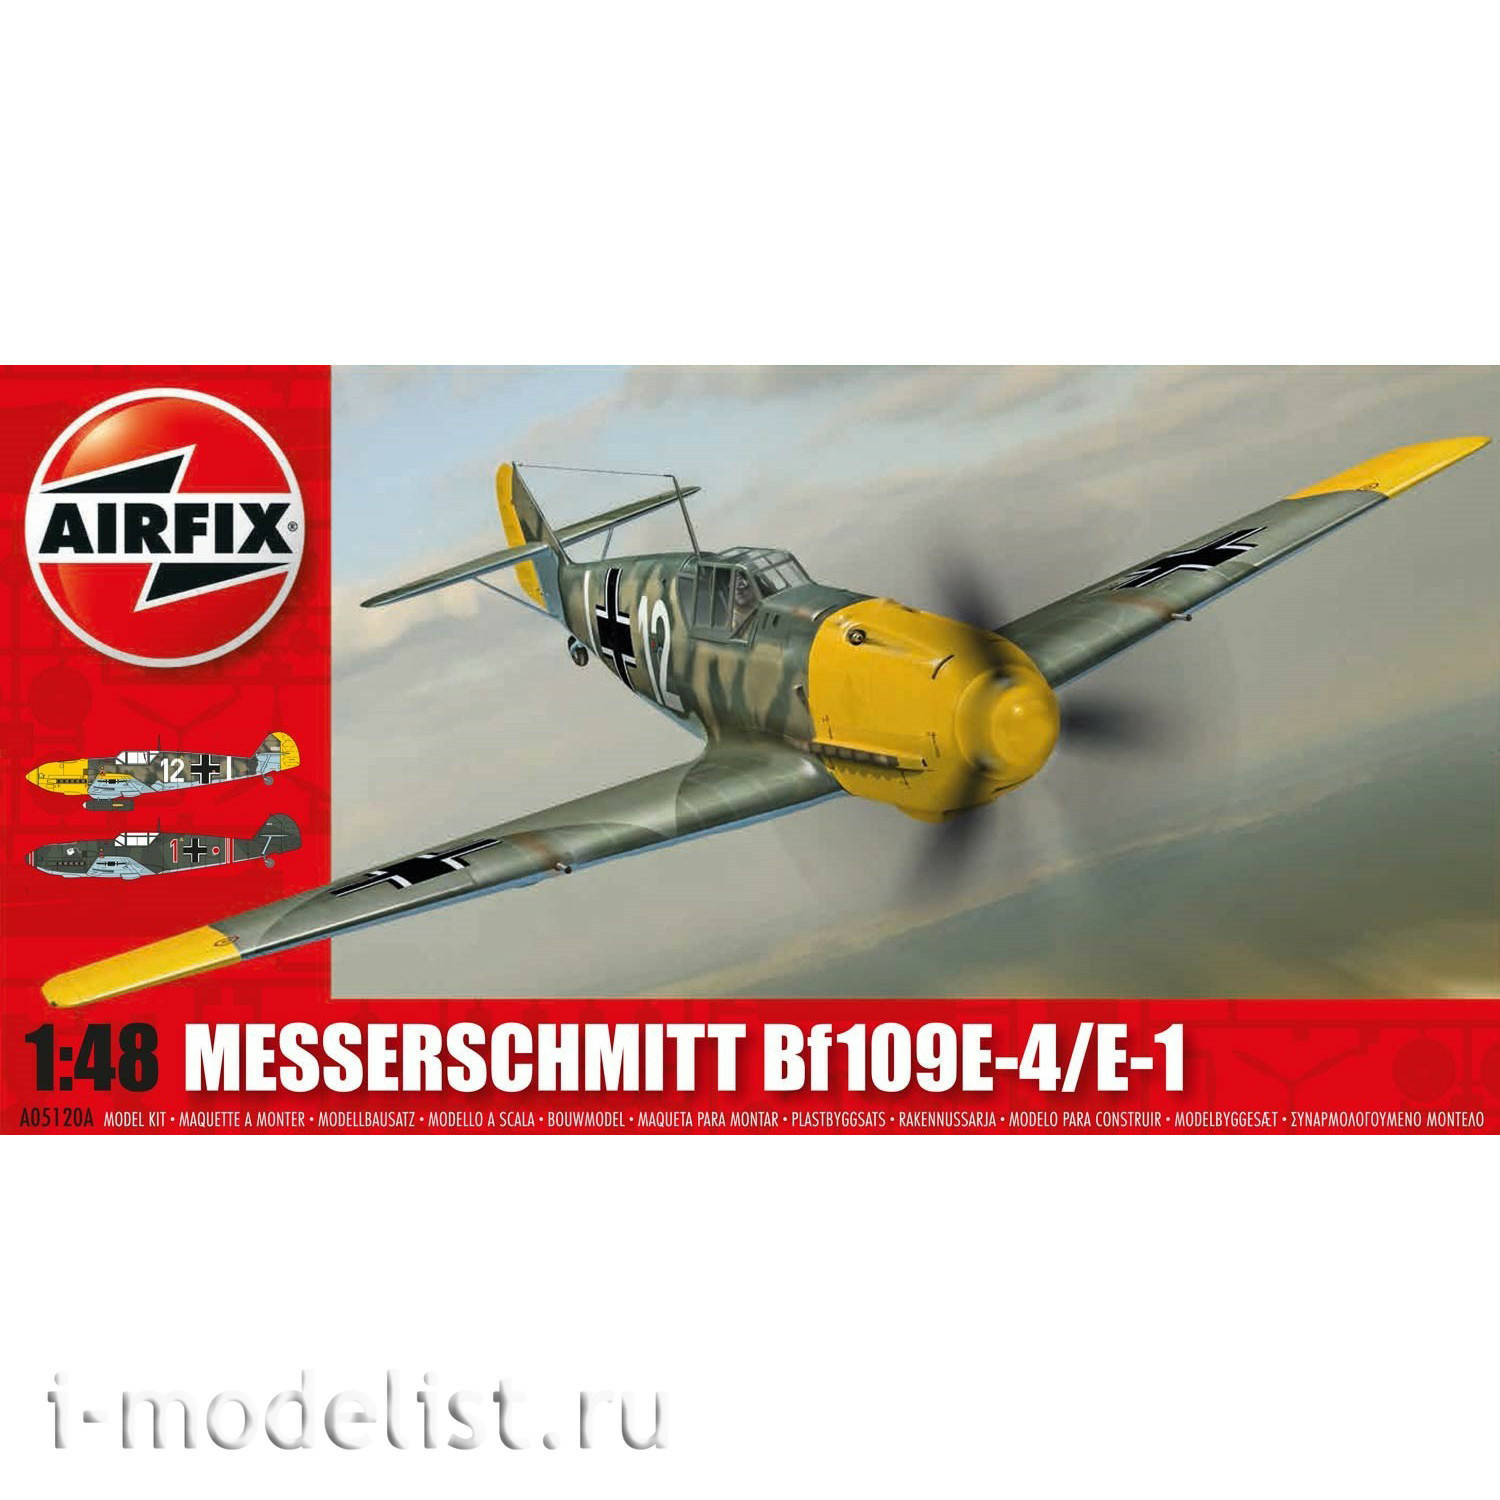 05120A Airfix 1/48 Messerschmitt Bf109E-4/E-1 Aircraft